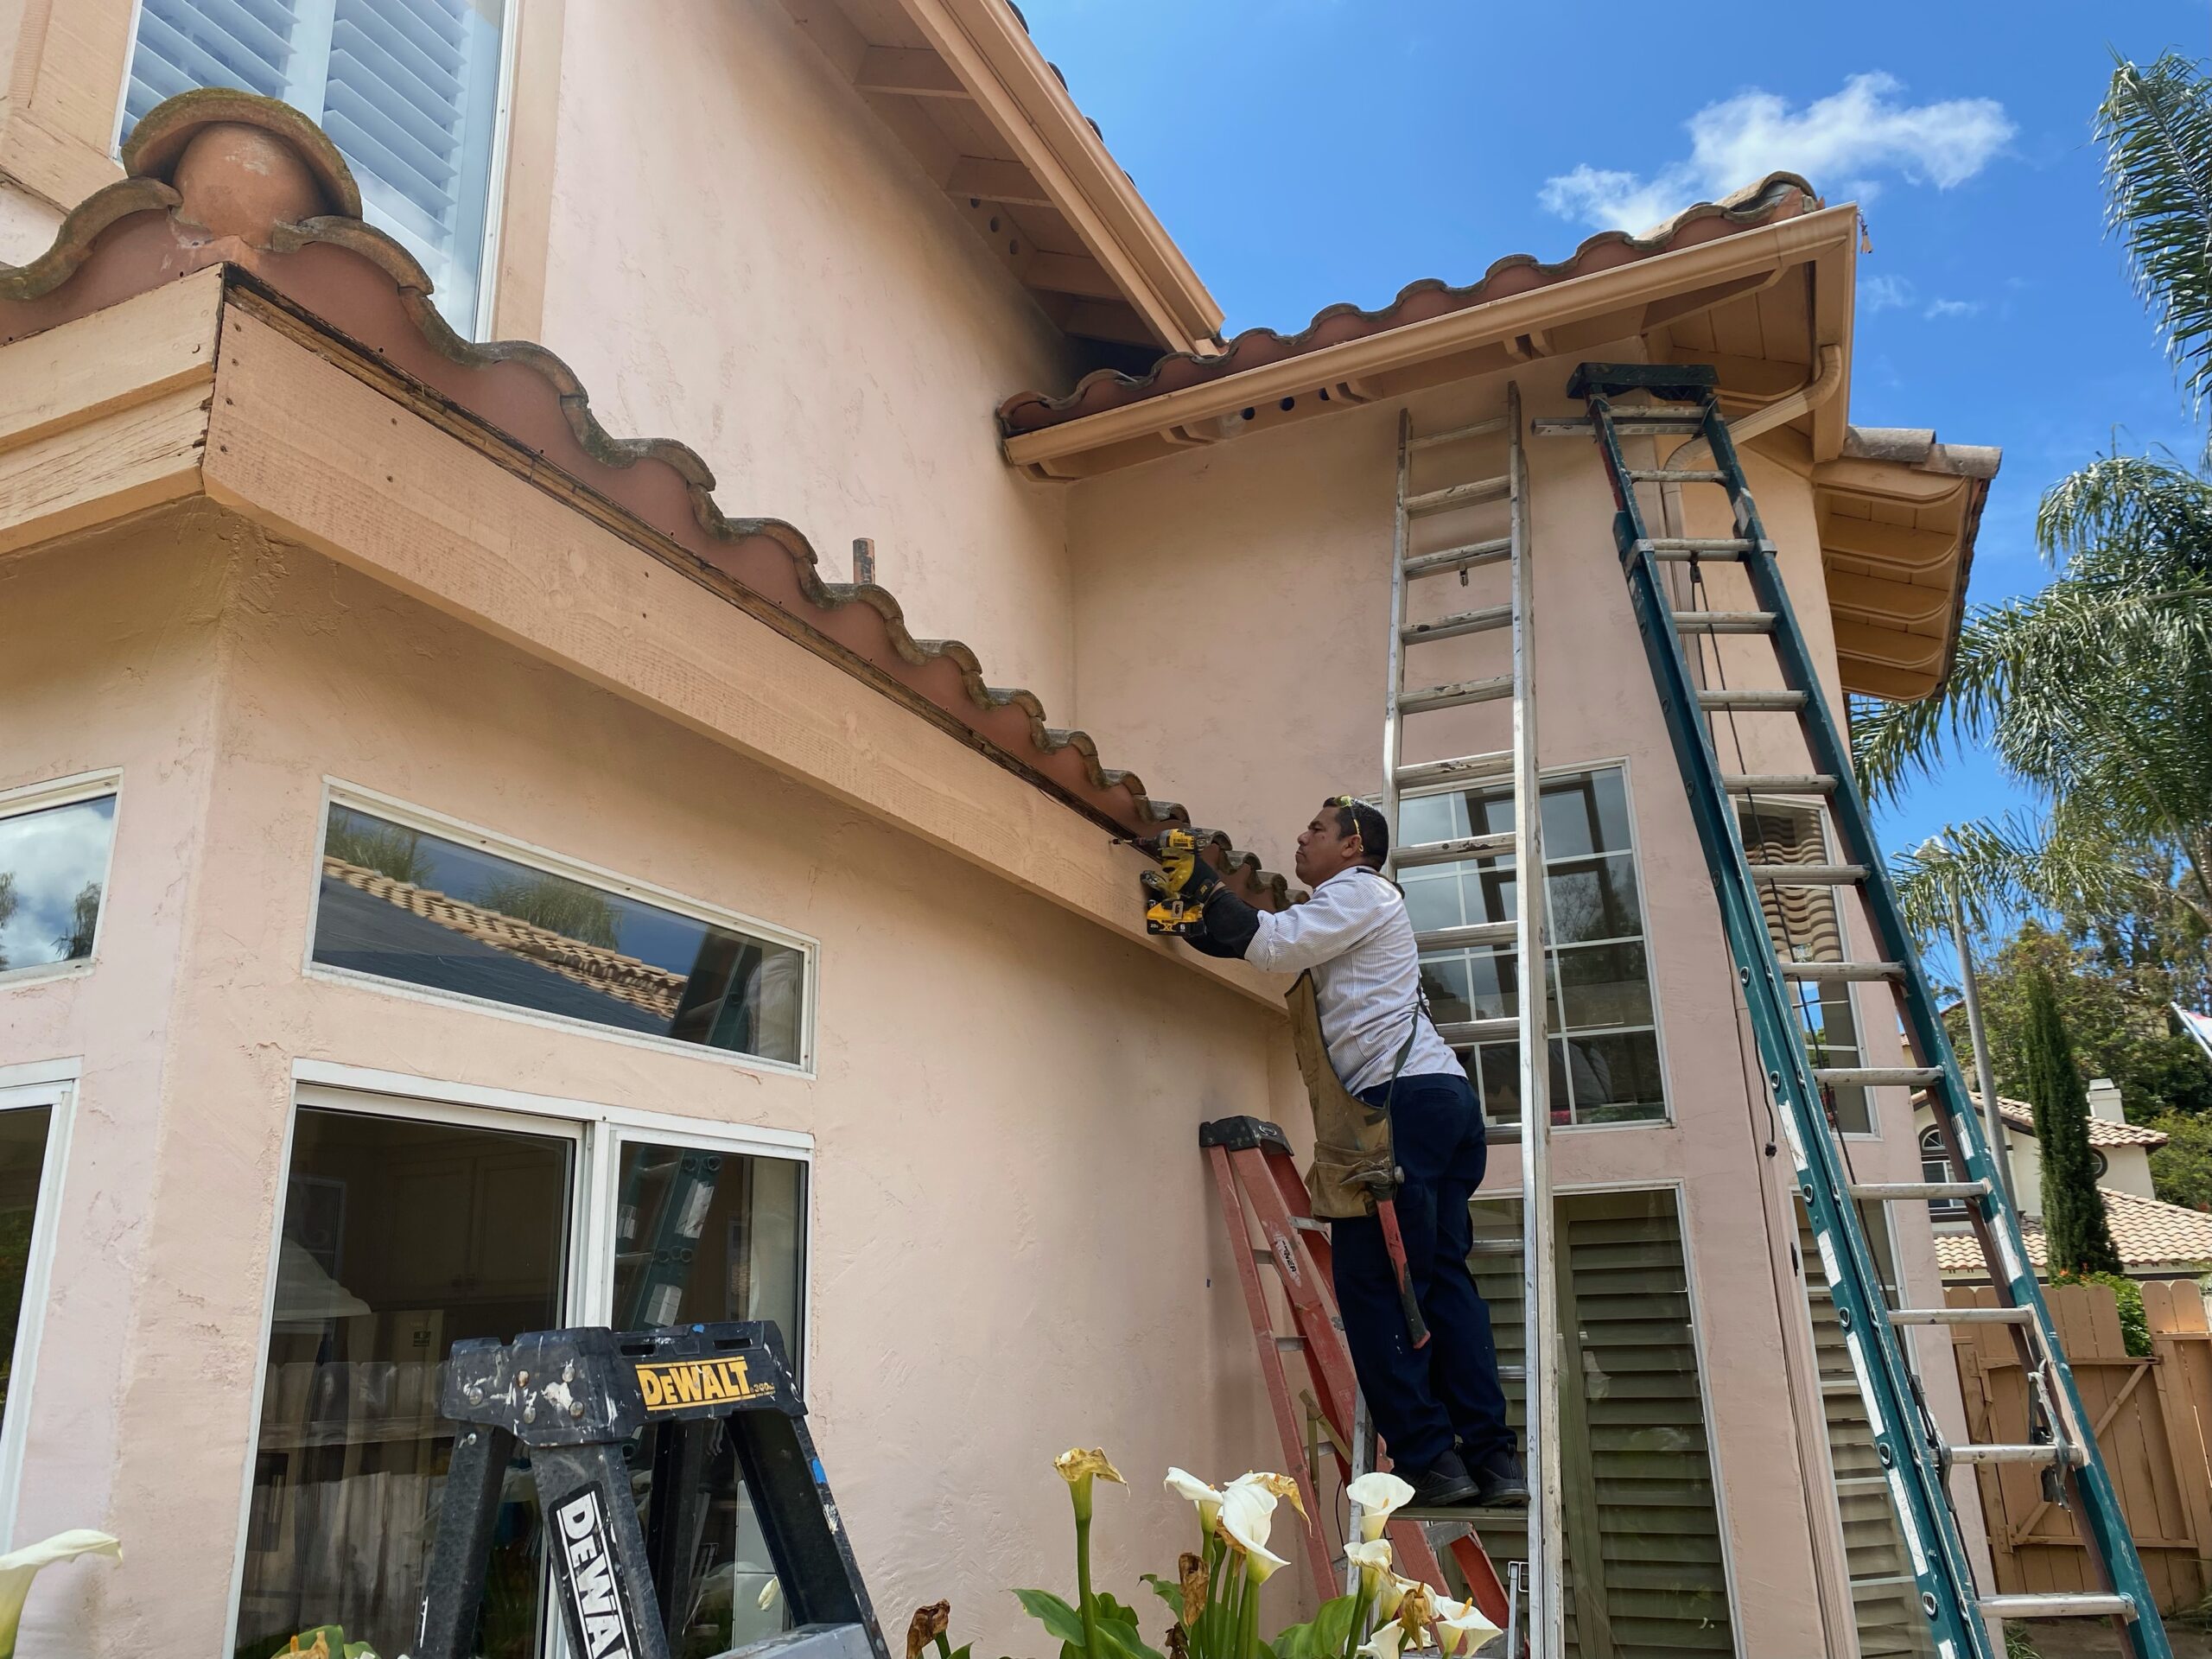 Termite Wood repair at exterior of home